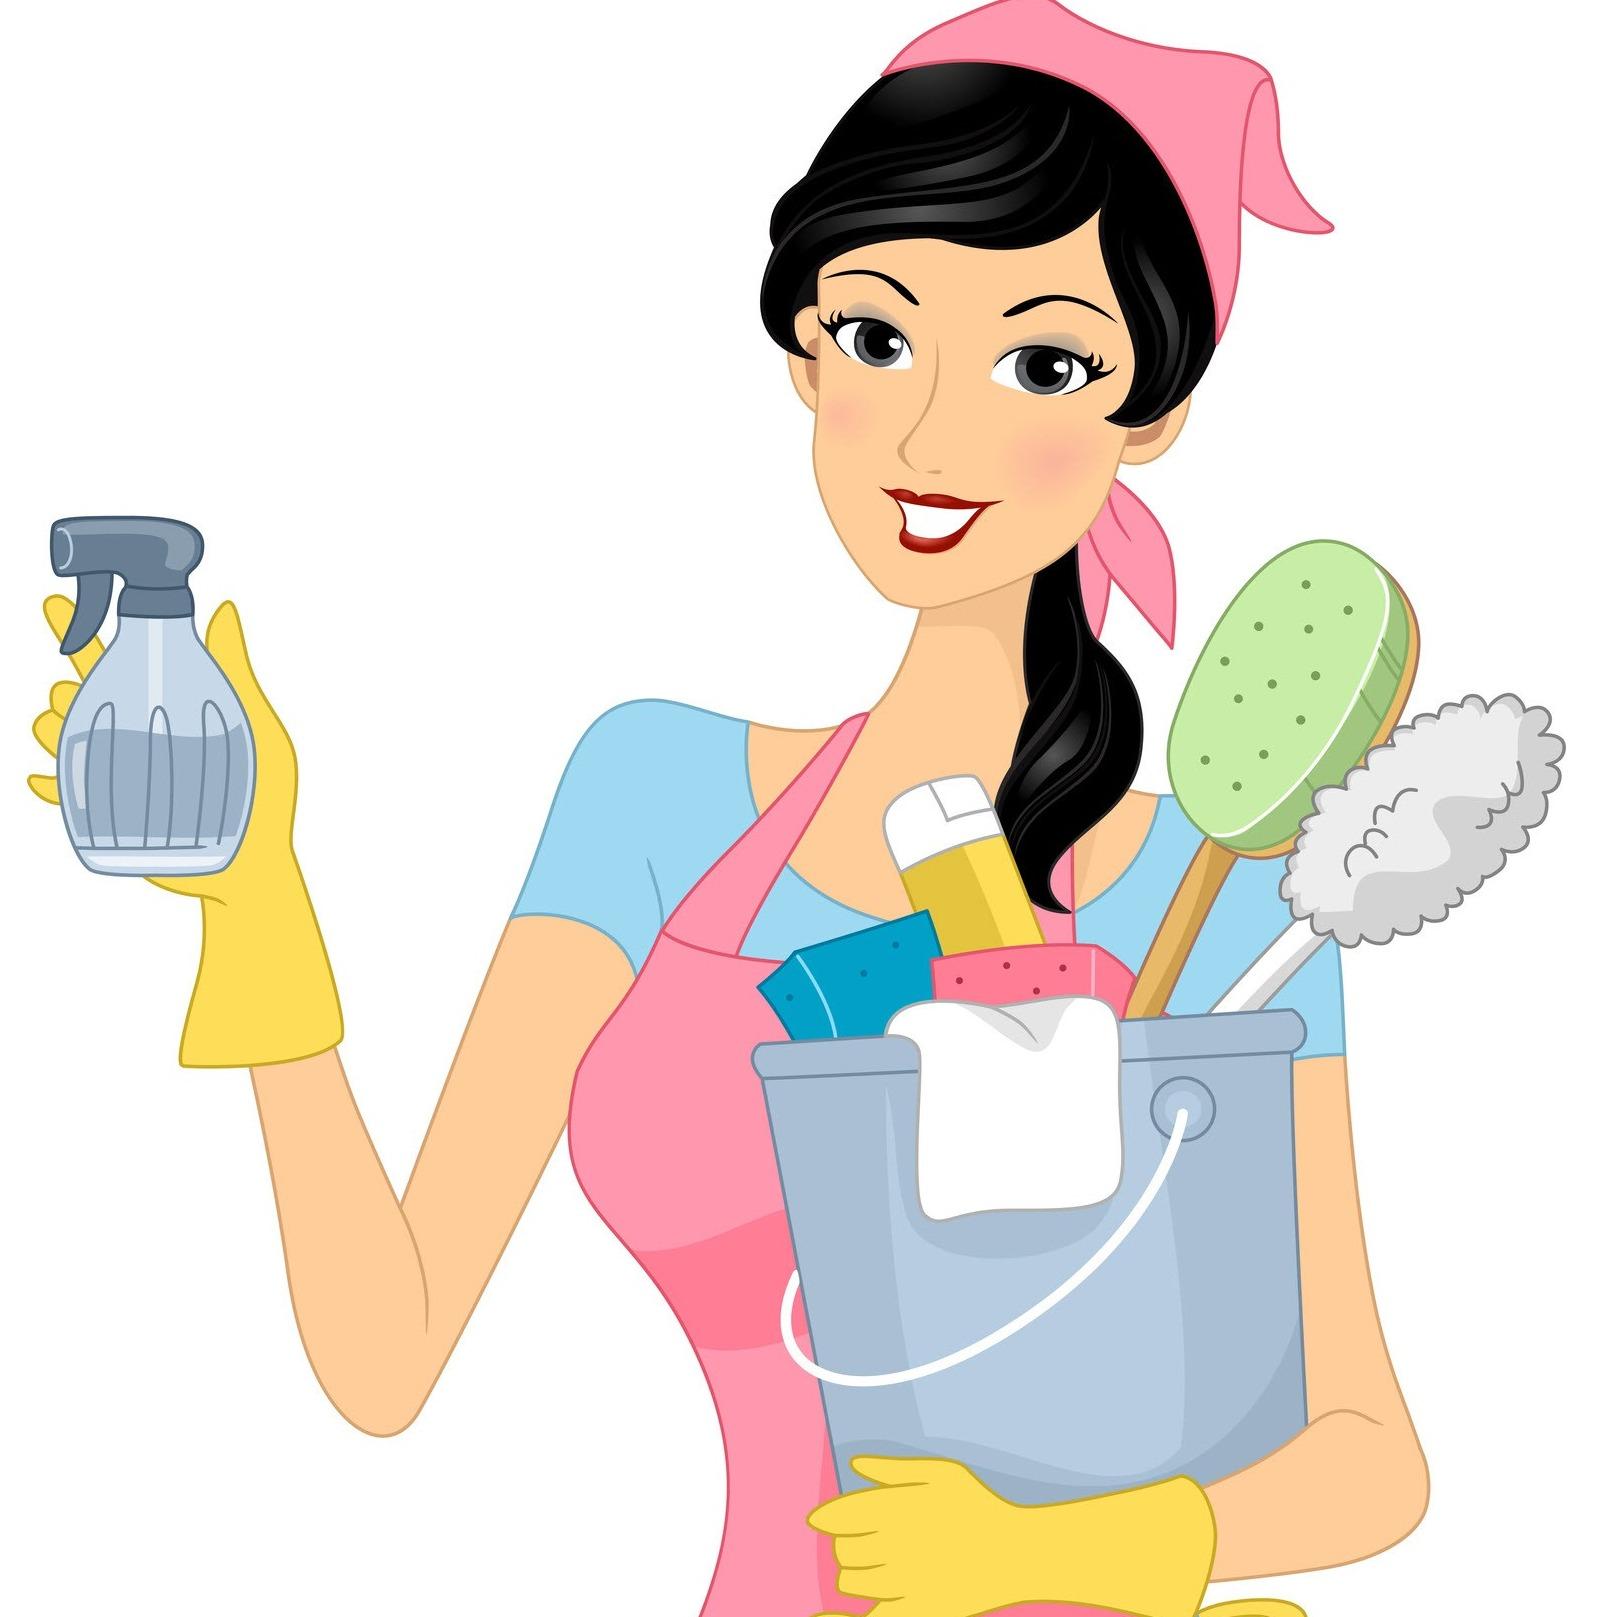 Посудомойщица тула. Уборка иллюстрация. Уборка мультяшки. Домохозяйка. Мойщик посуды.